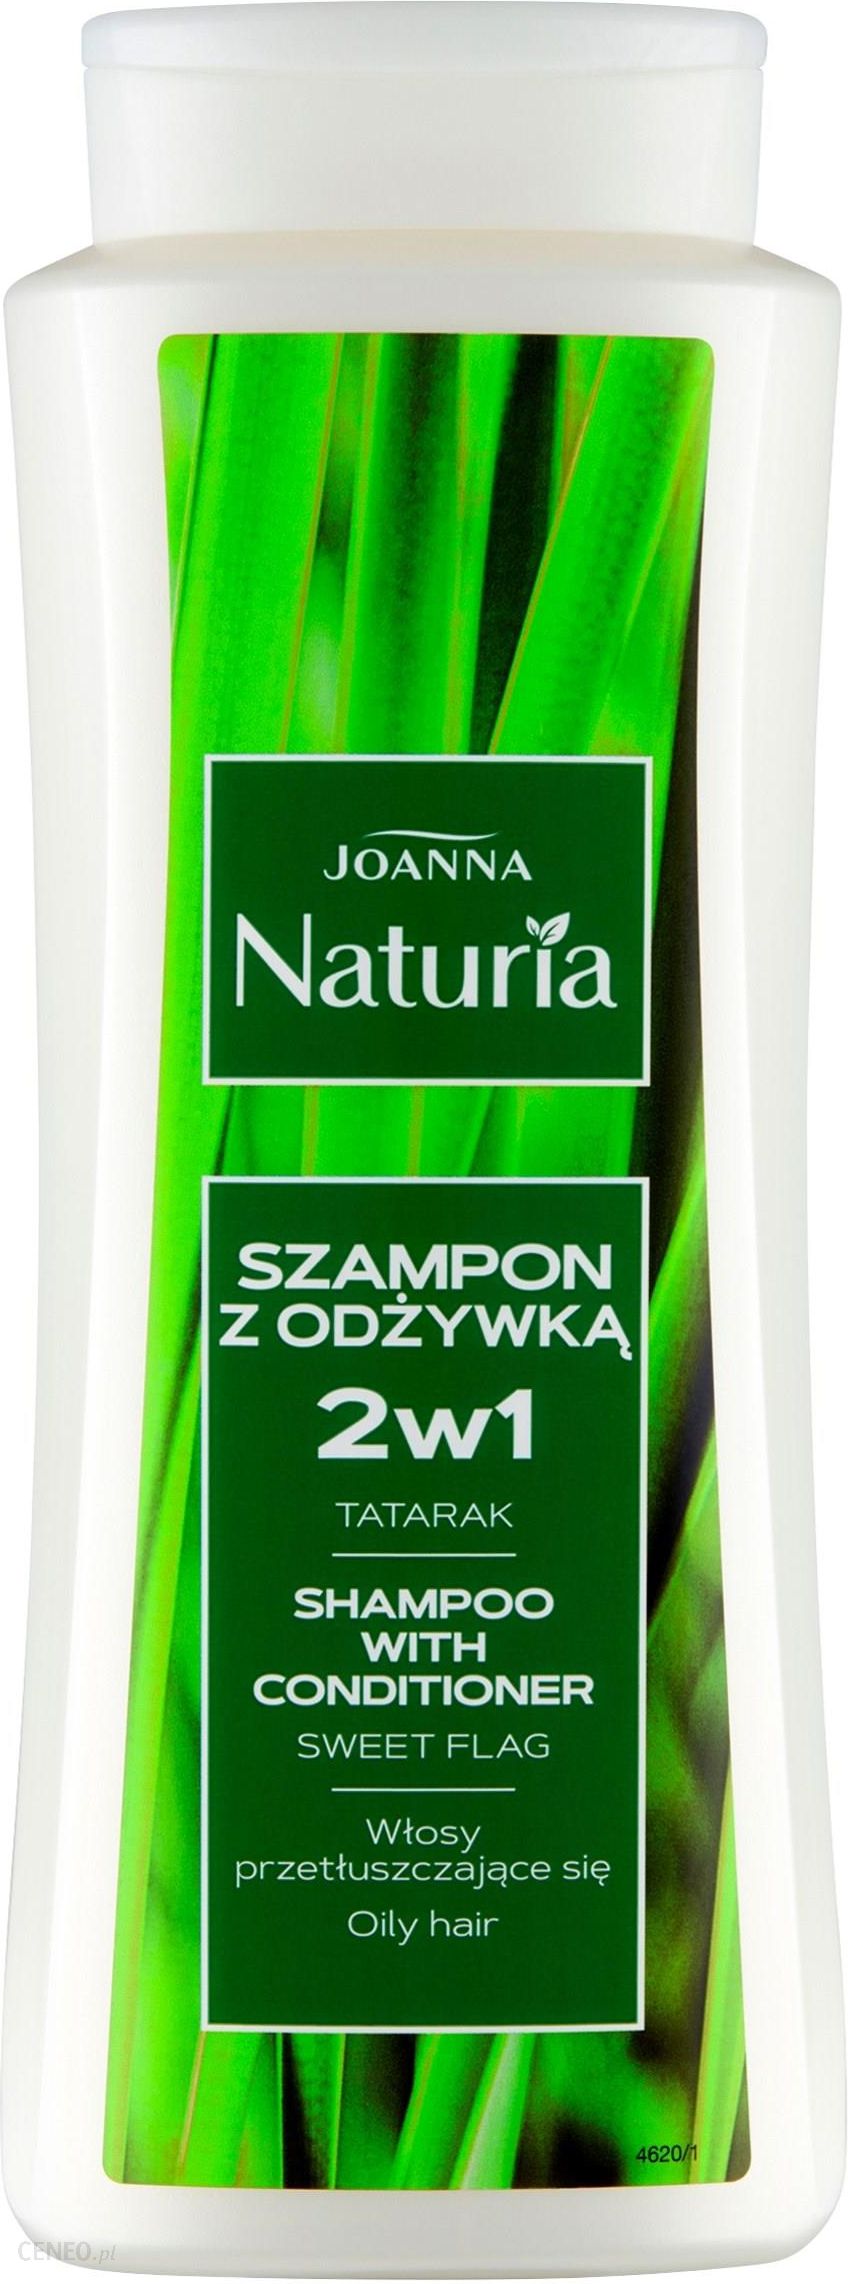 przetłuszczające się włosy szampon naturalny 500 ml 49 zl